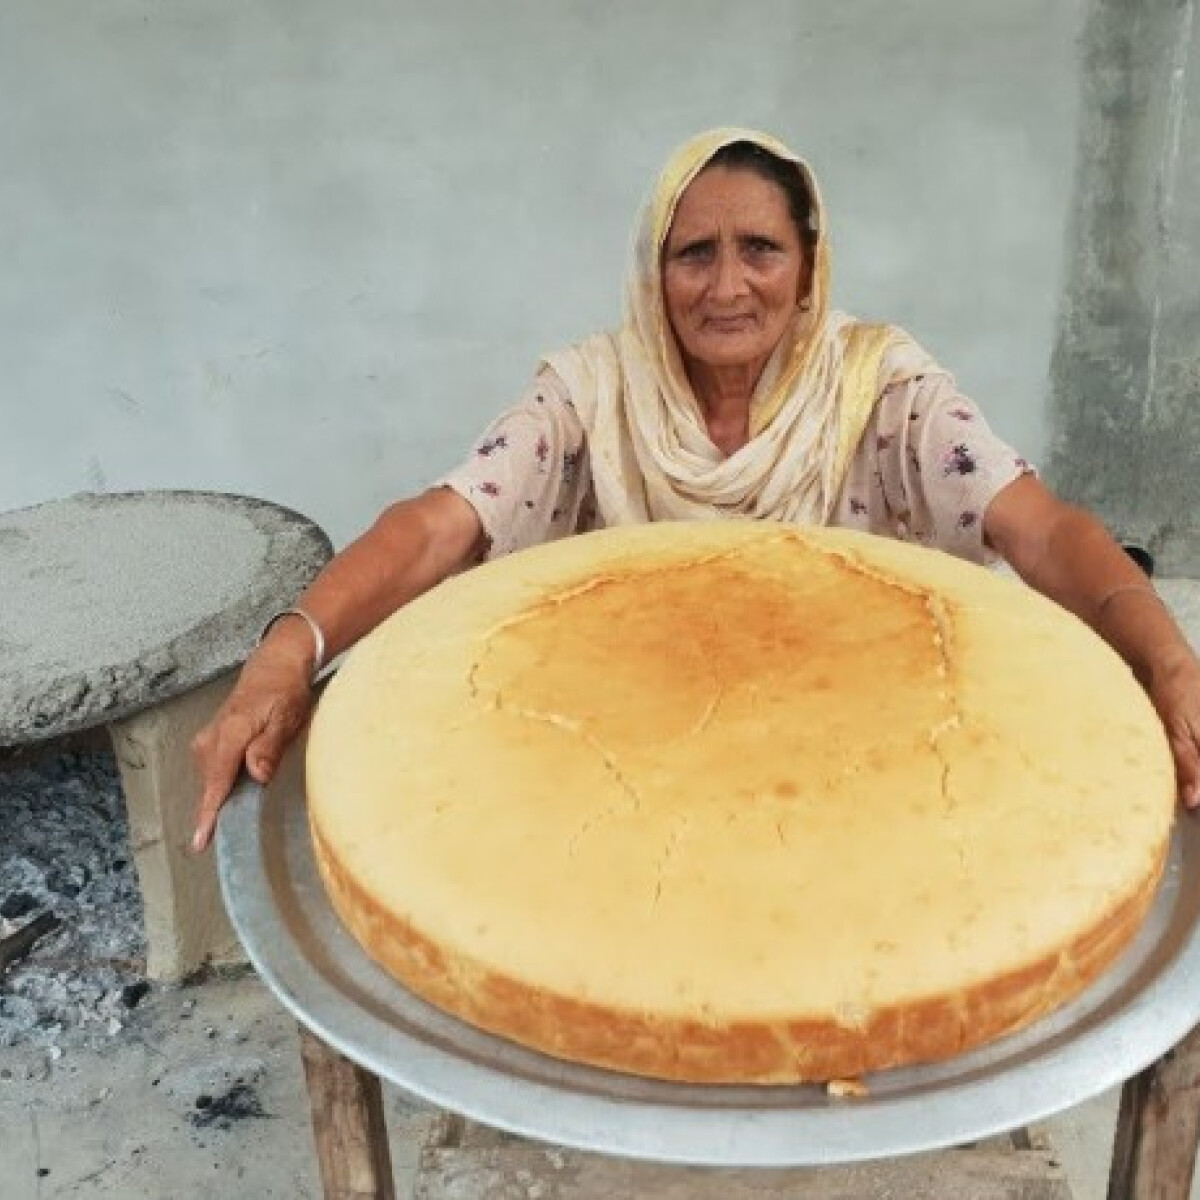 Több mint 2 millióan követik a nagymamát, aki rászoruló gyerekeknek főz